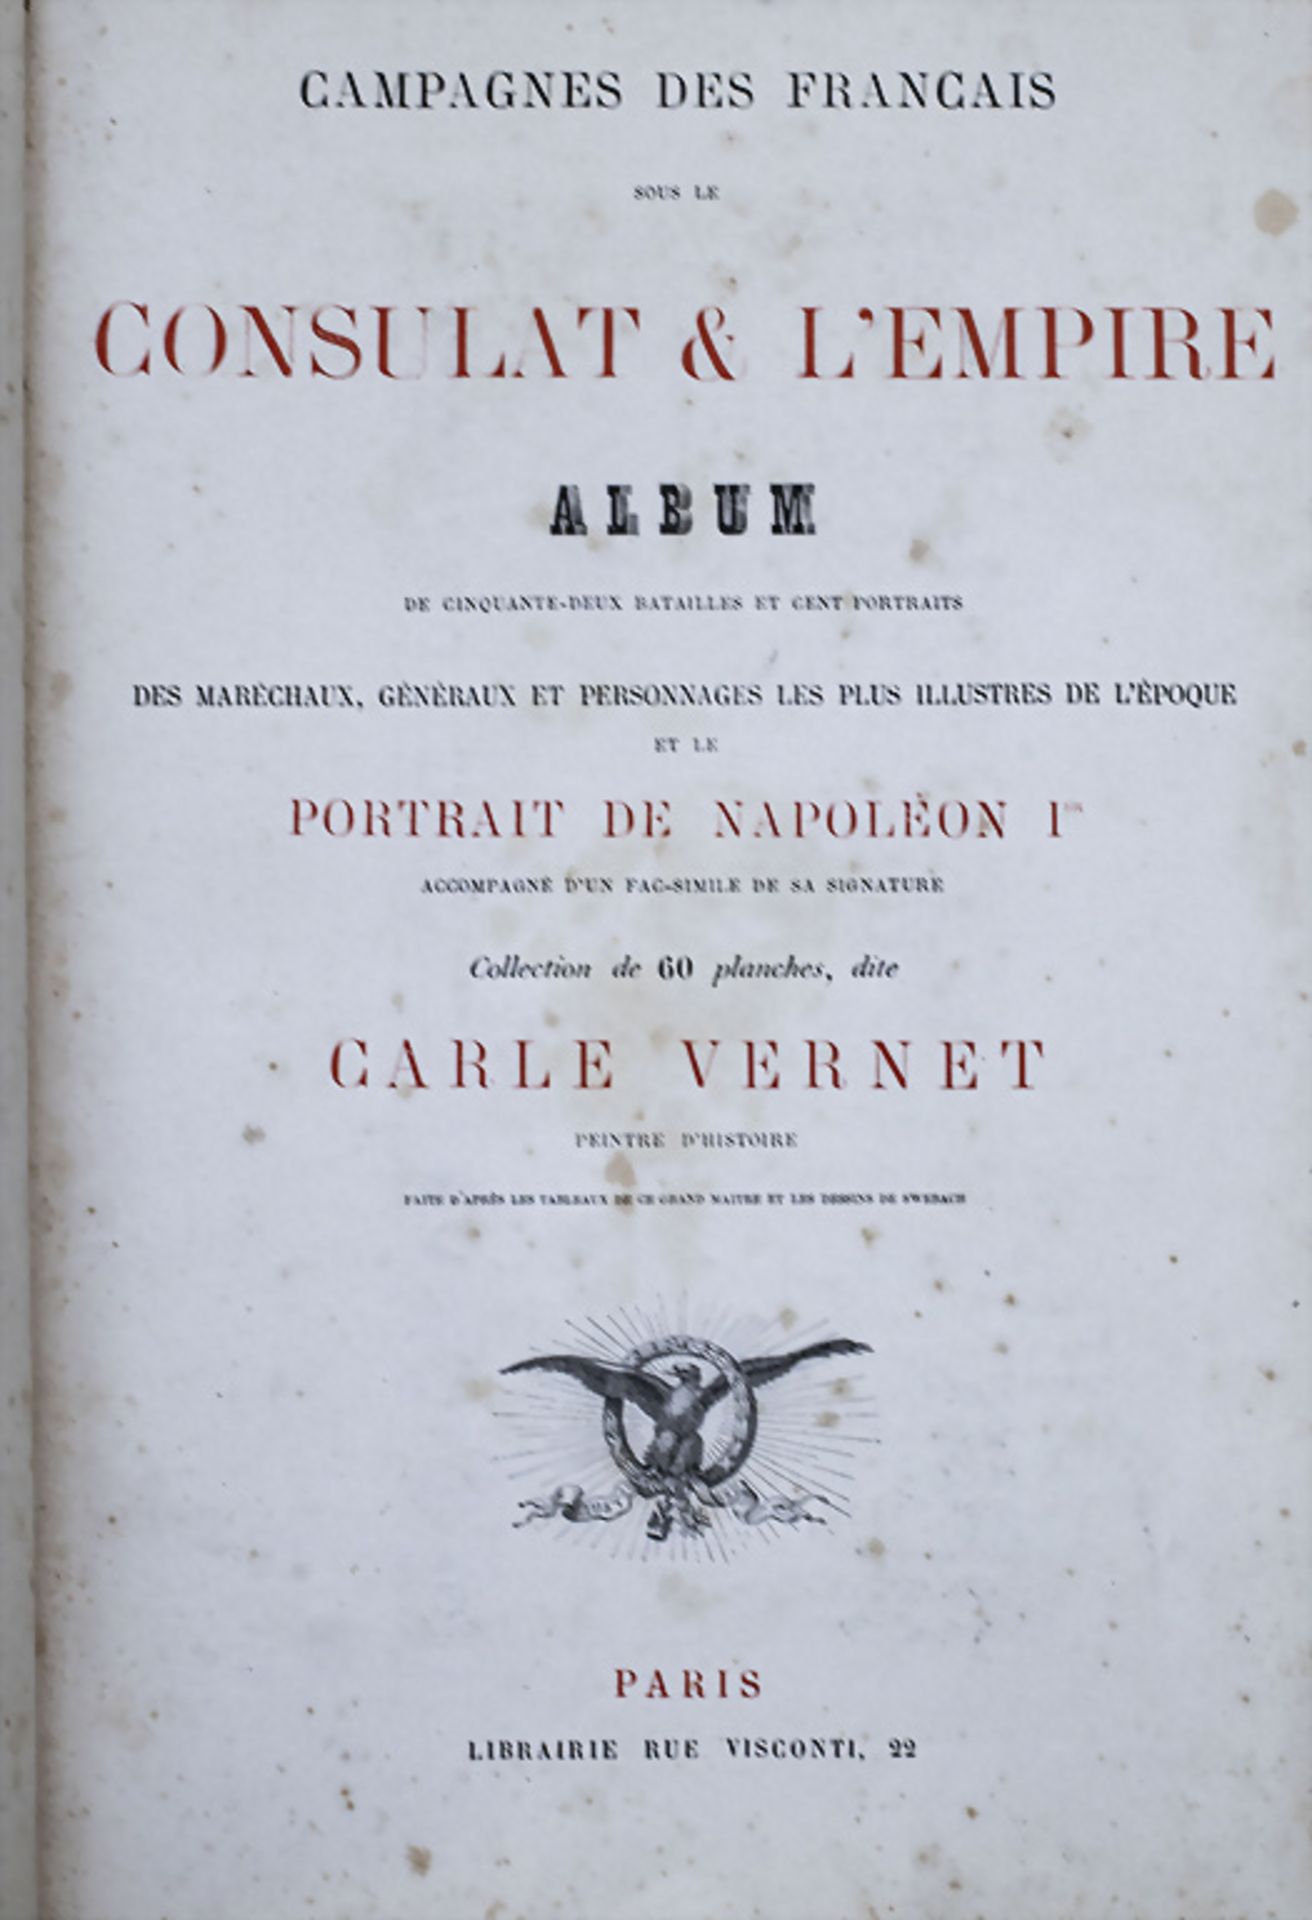 Campagnes des francais sous le consulat et l'empire, Paris, 19. Jh. - Bild 2 aus 5